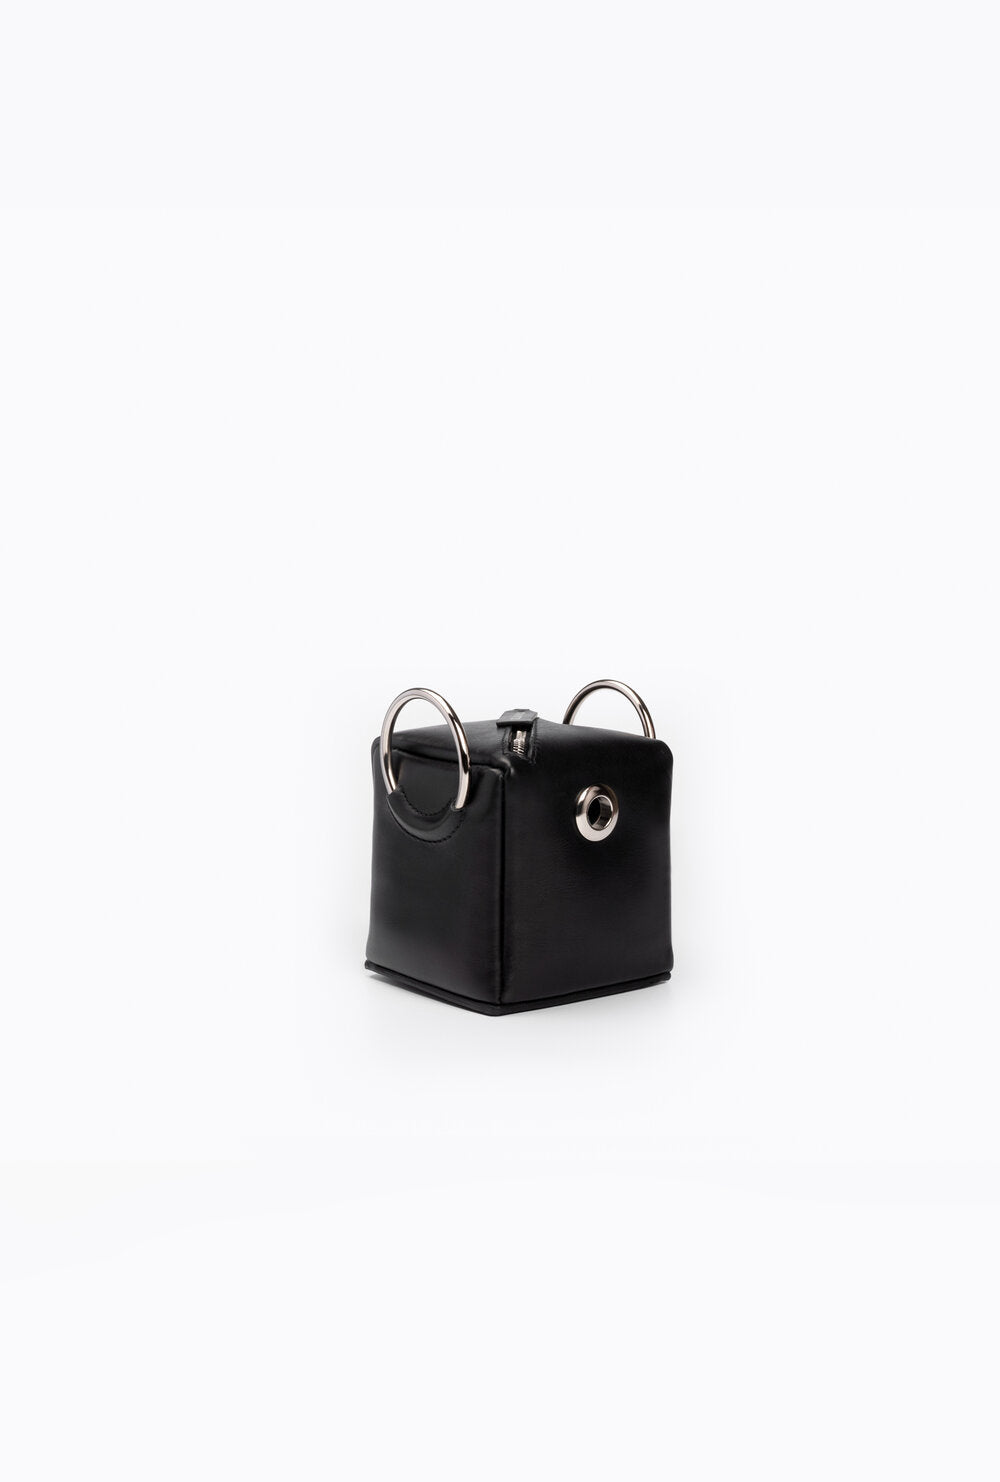 SHOKUPAN MINI BOX BAG - BLACK | Pre-Order Available